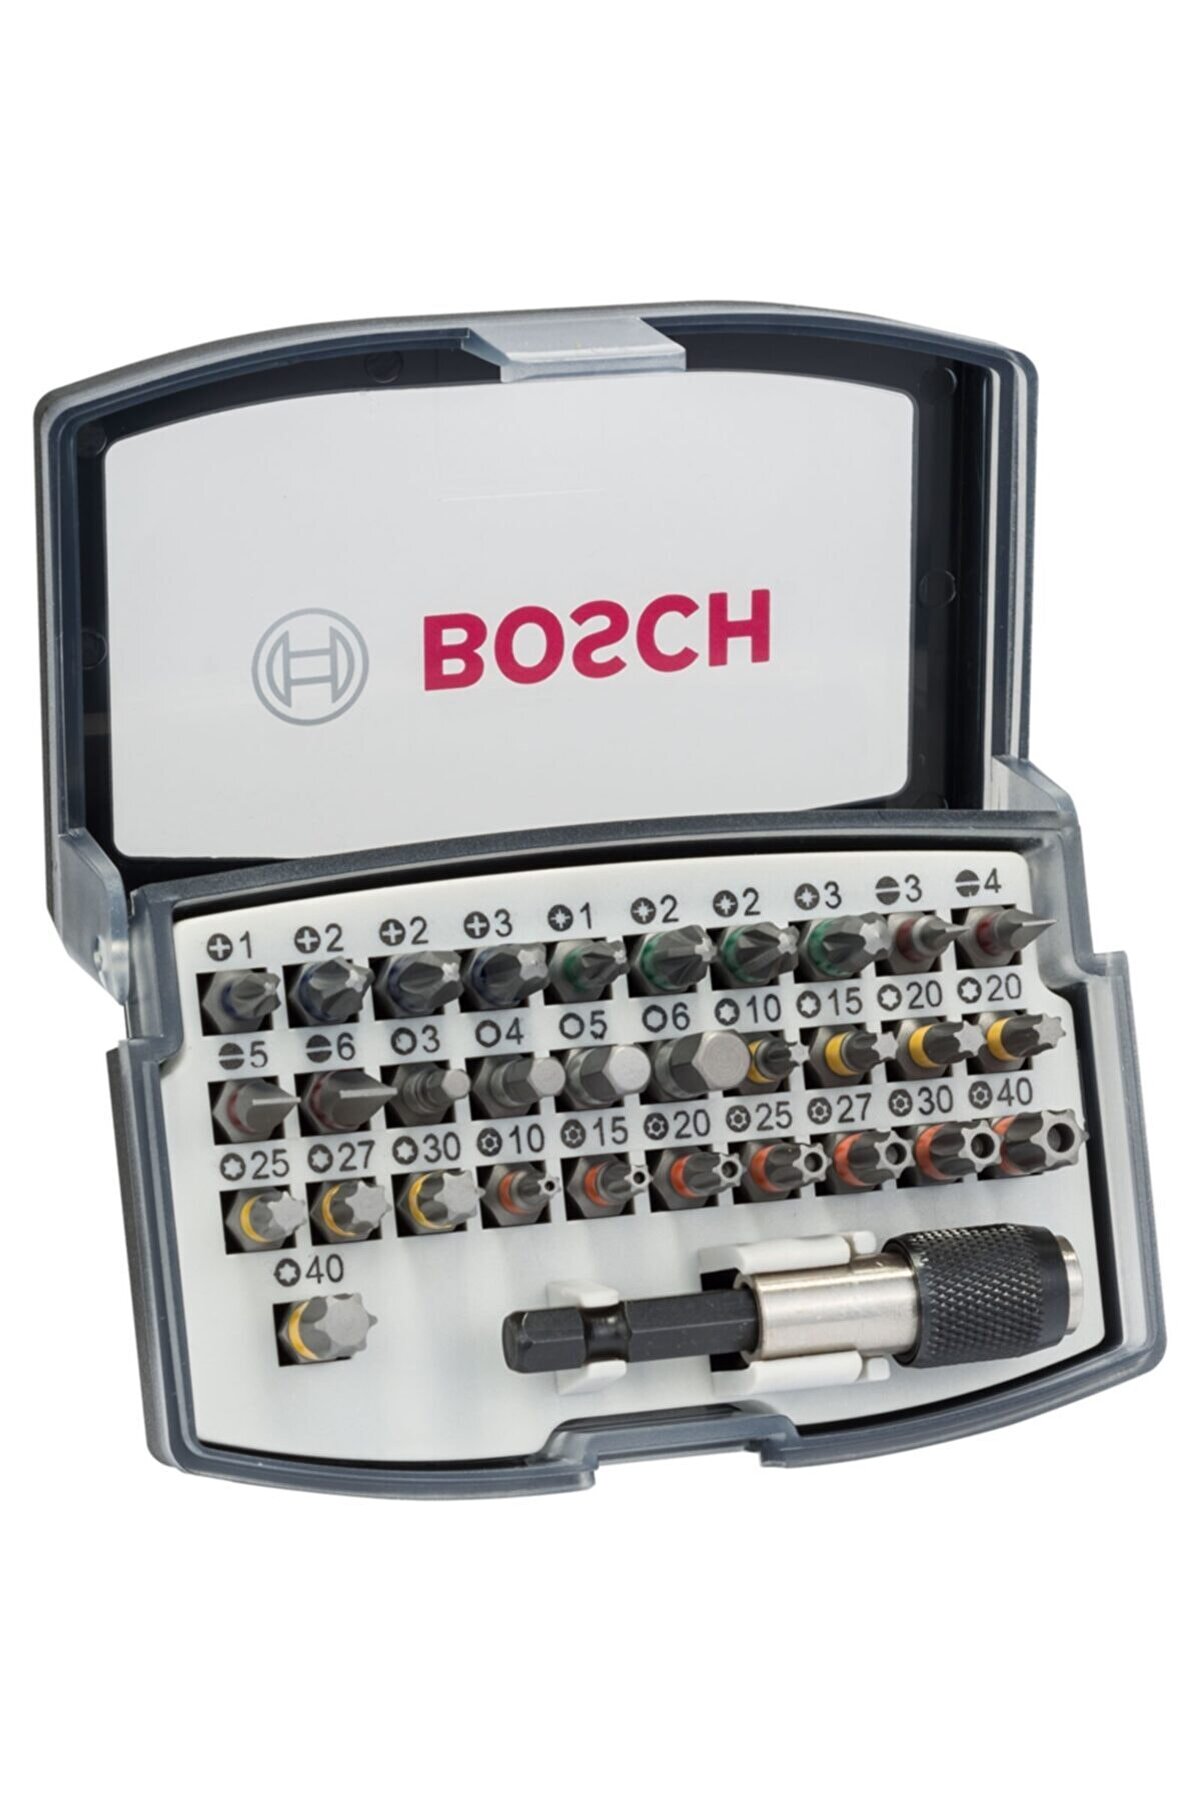 Bosch%20Profesyonel%2032%20Parça%20Vidalama%20Ucu%20Seti%2032%20Parça%20Extra%20Hard%20Vidalama%20Uç%20Seti